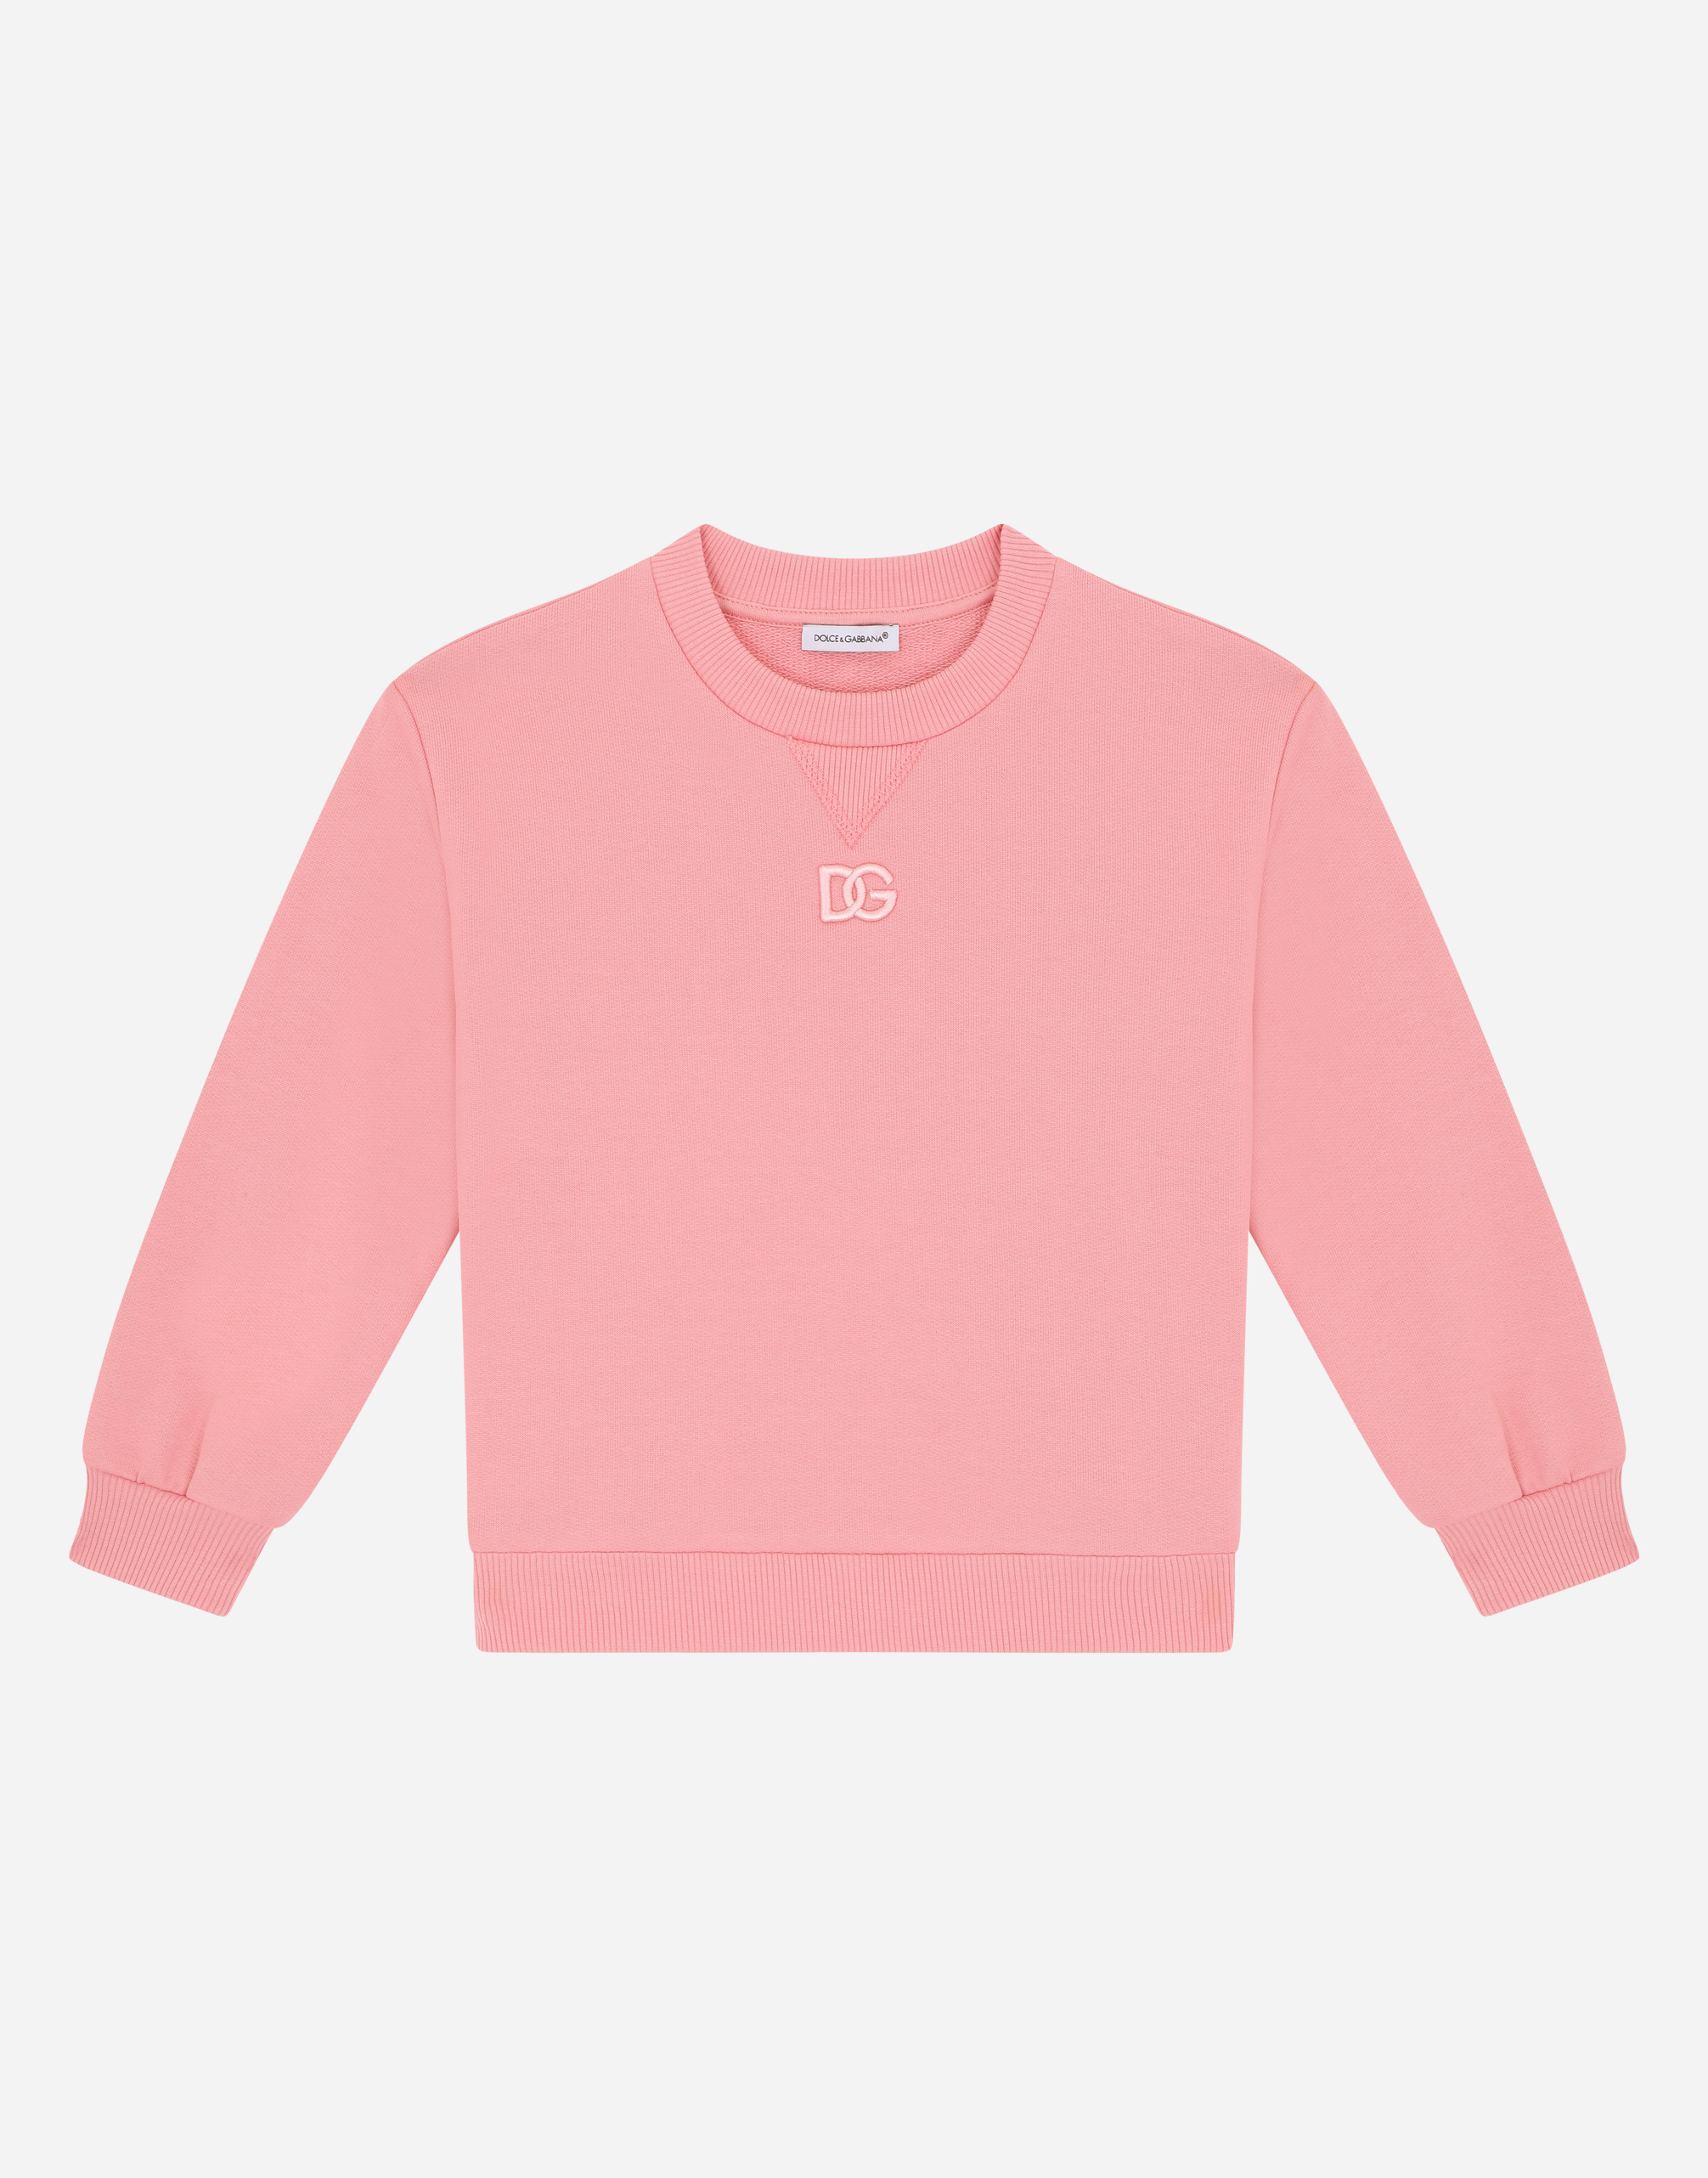 Jersey round-neck sweatshirt with DG logo print in Pink